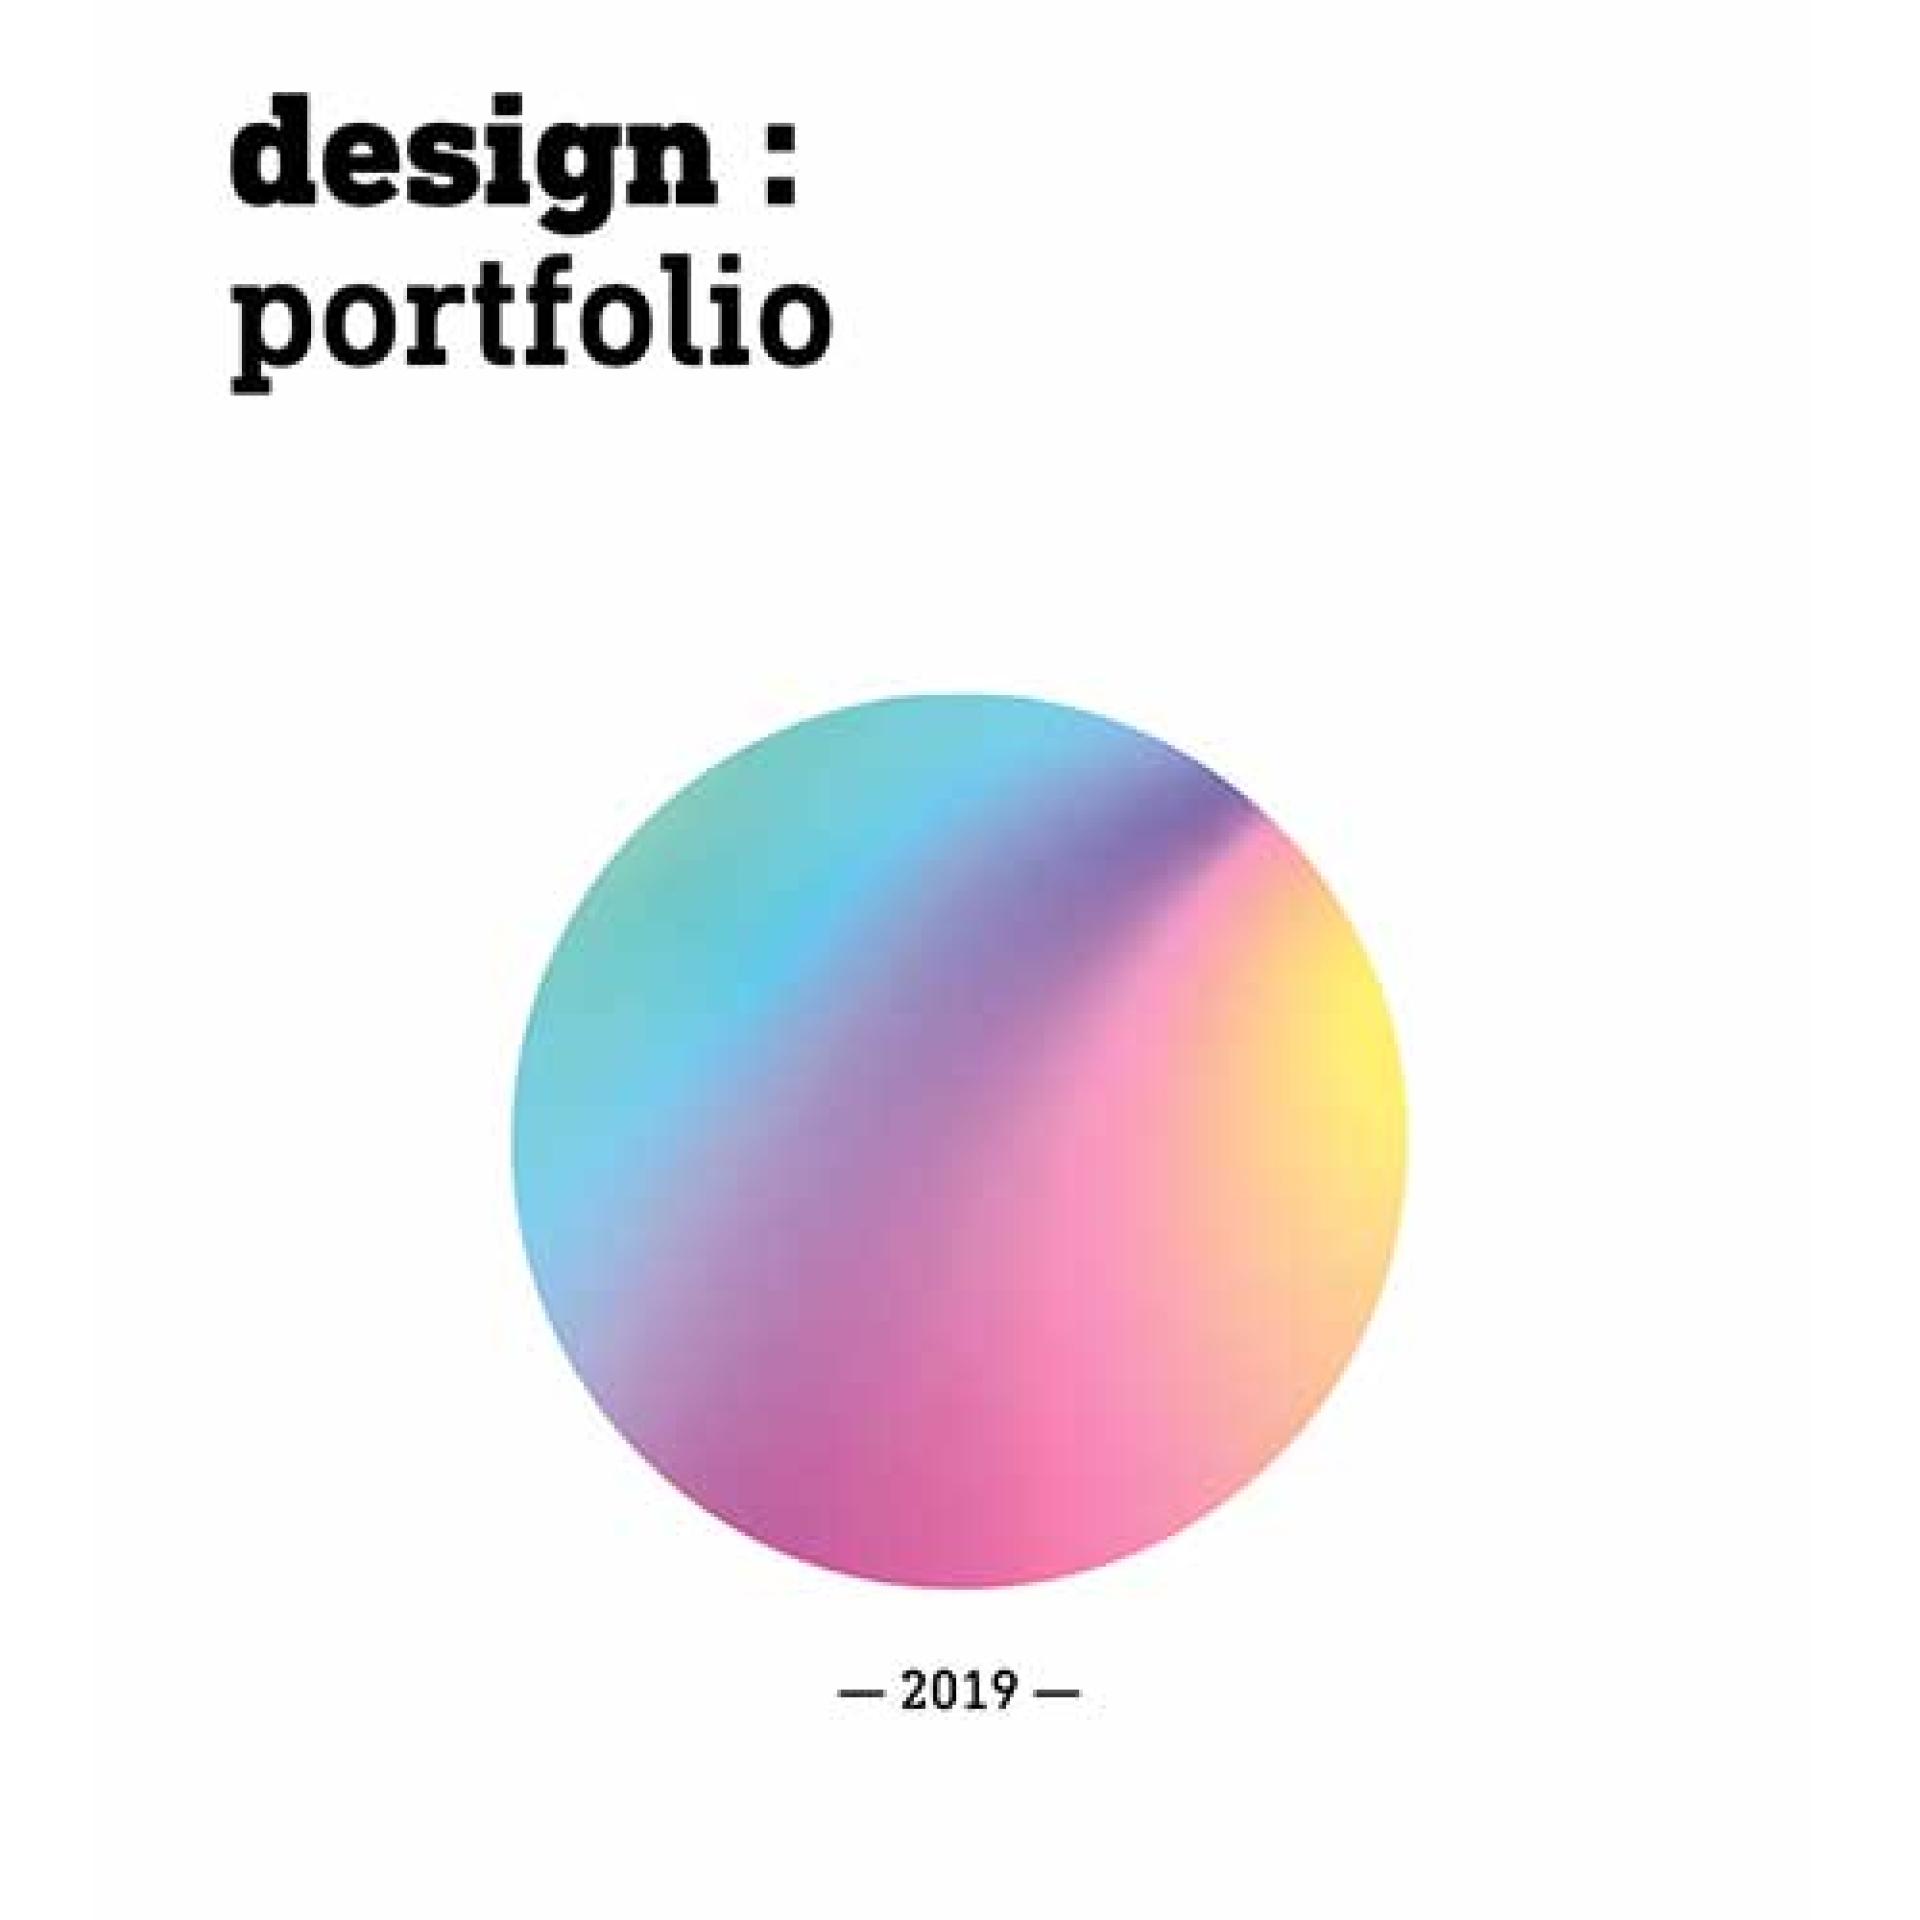  Design : portfolio 2019